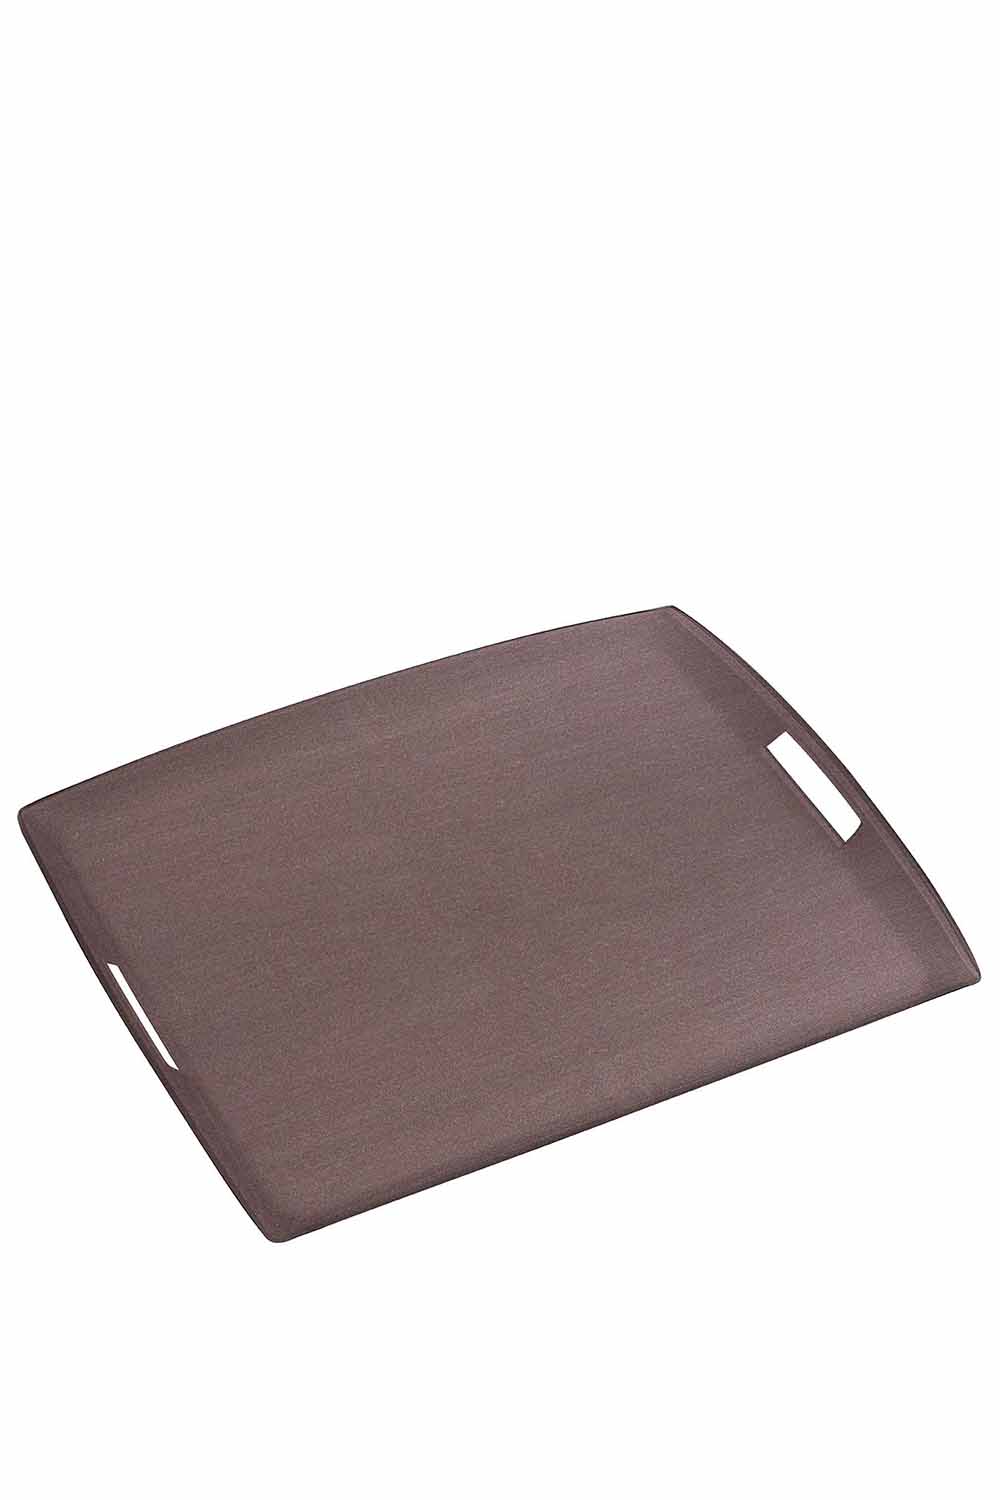 Secret Acrylic Tray, Earthstone, 54x43cm